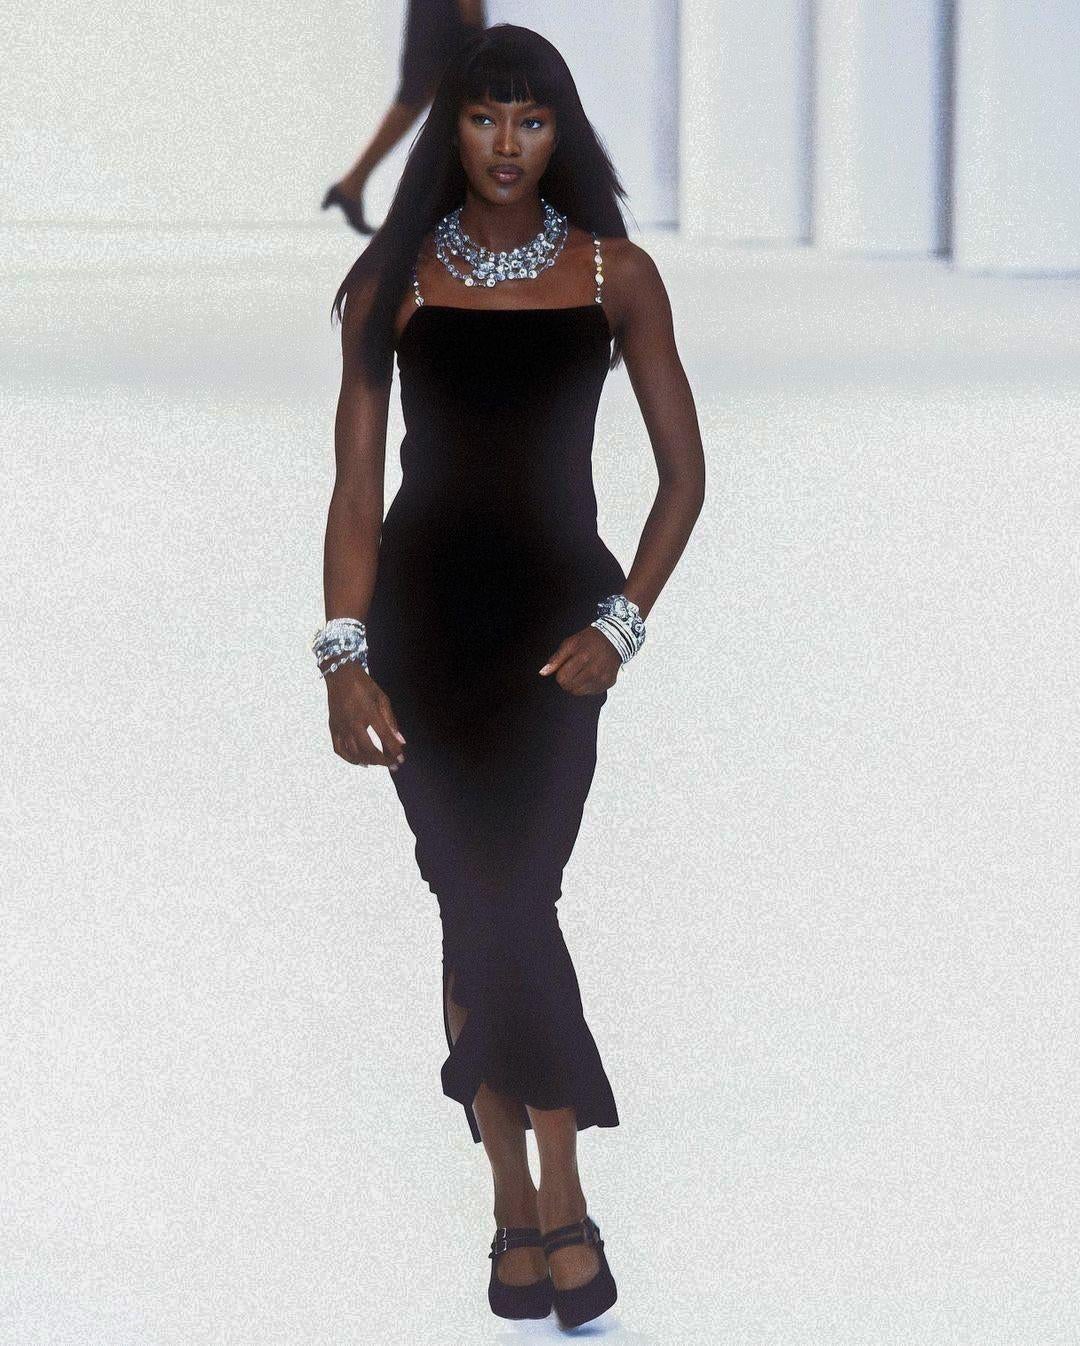 Voici cette exquise robe vintage Chanel de la collection emblématique printemps/été 1998, portée par l'éblouissante Naomi Campbell. Confectionnée en crêpe de laine noir luxueux, sa silhouette est définie par des bretelles en chaîne argentée ornées